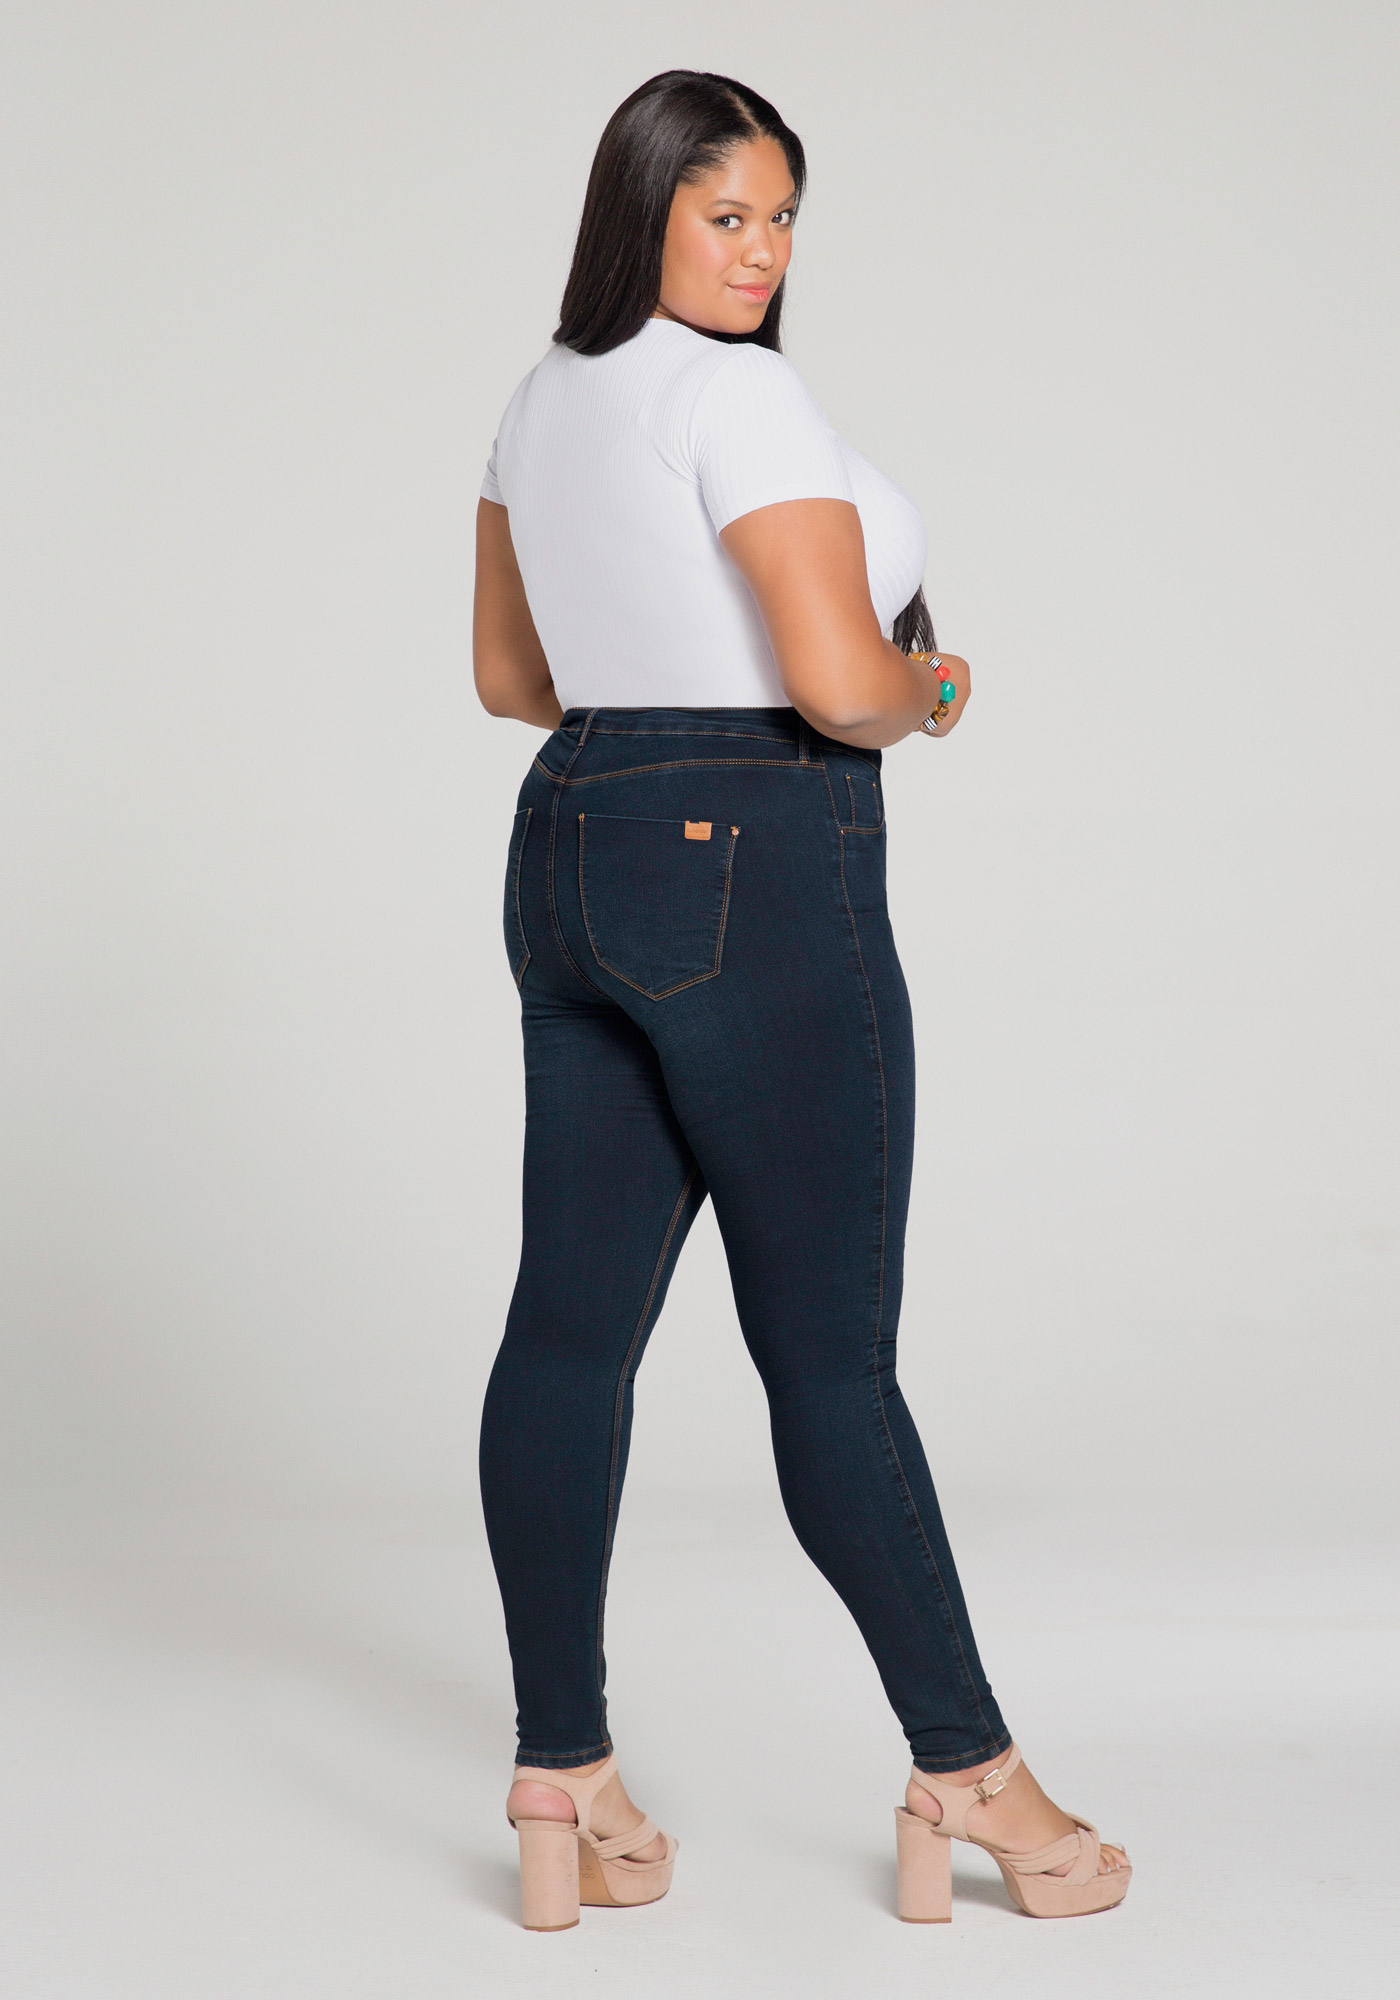 Um jeans, três tamanhos: Lunender amplia linha Fit For Me com foco